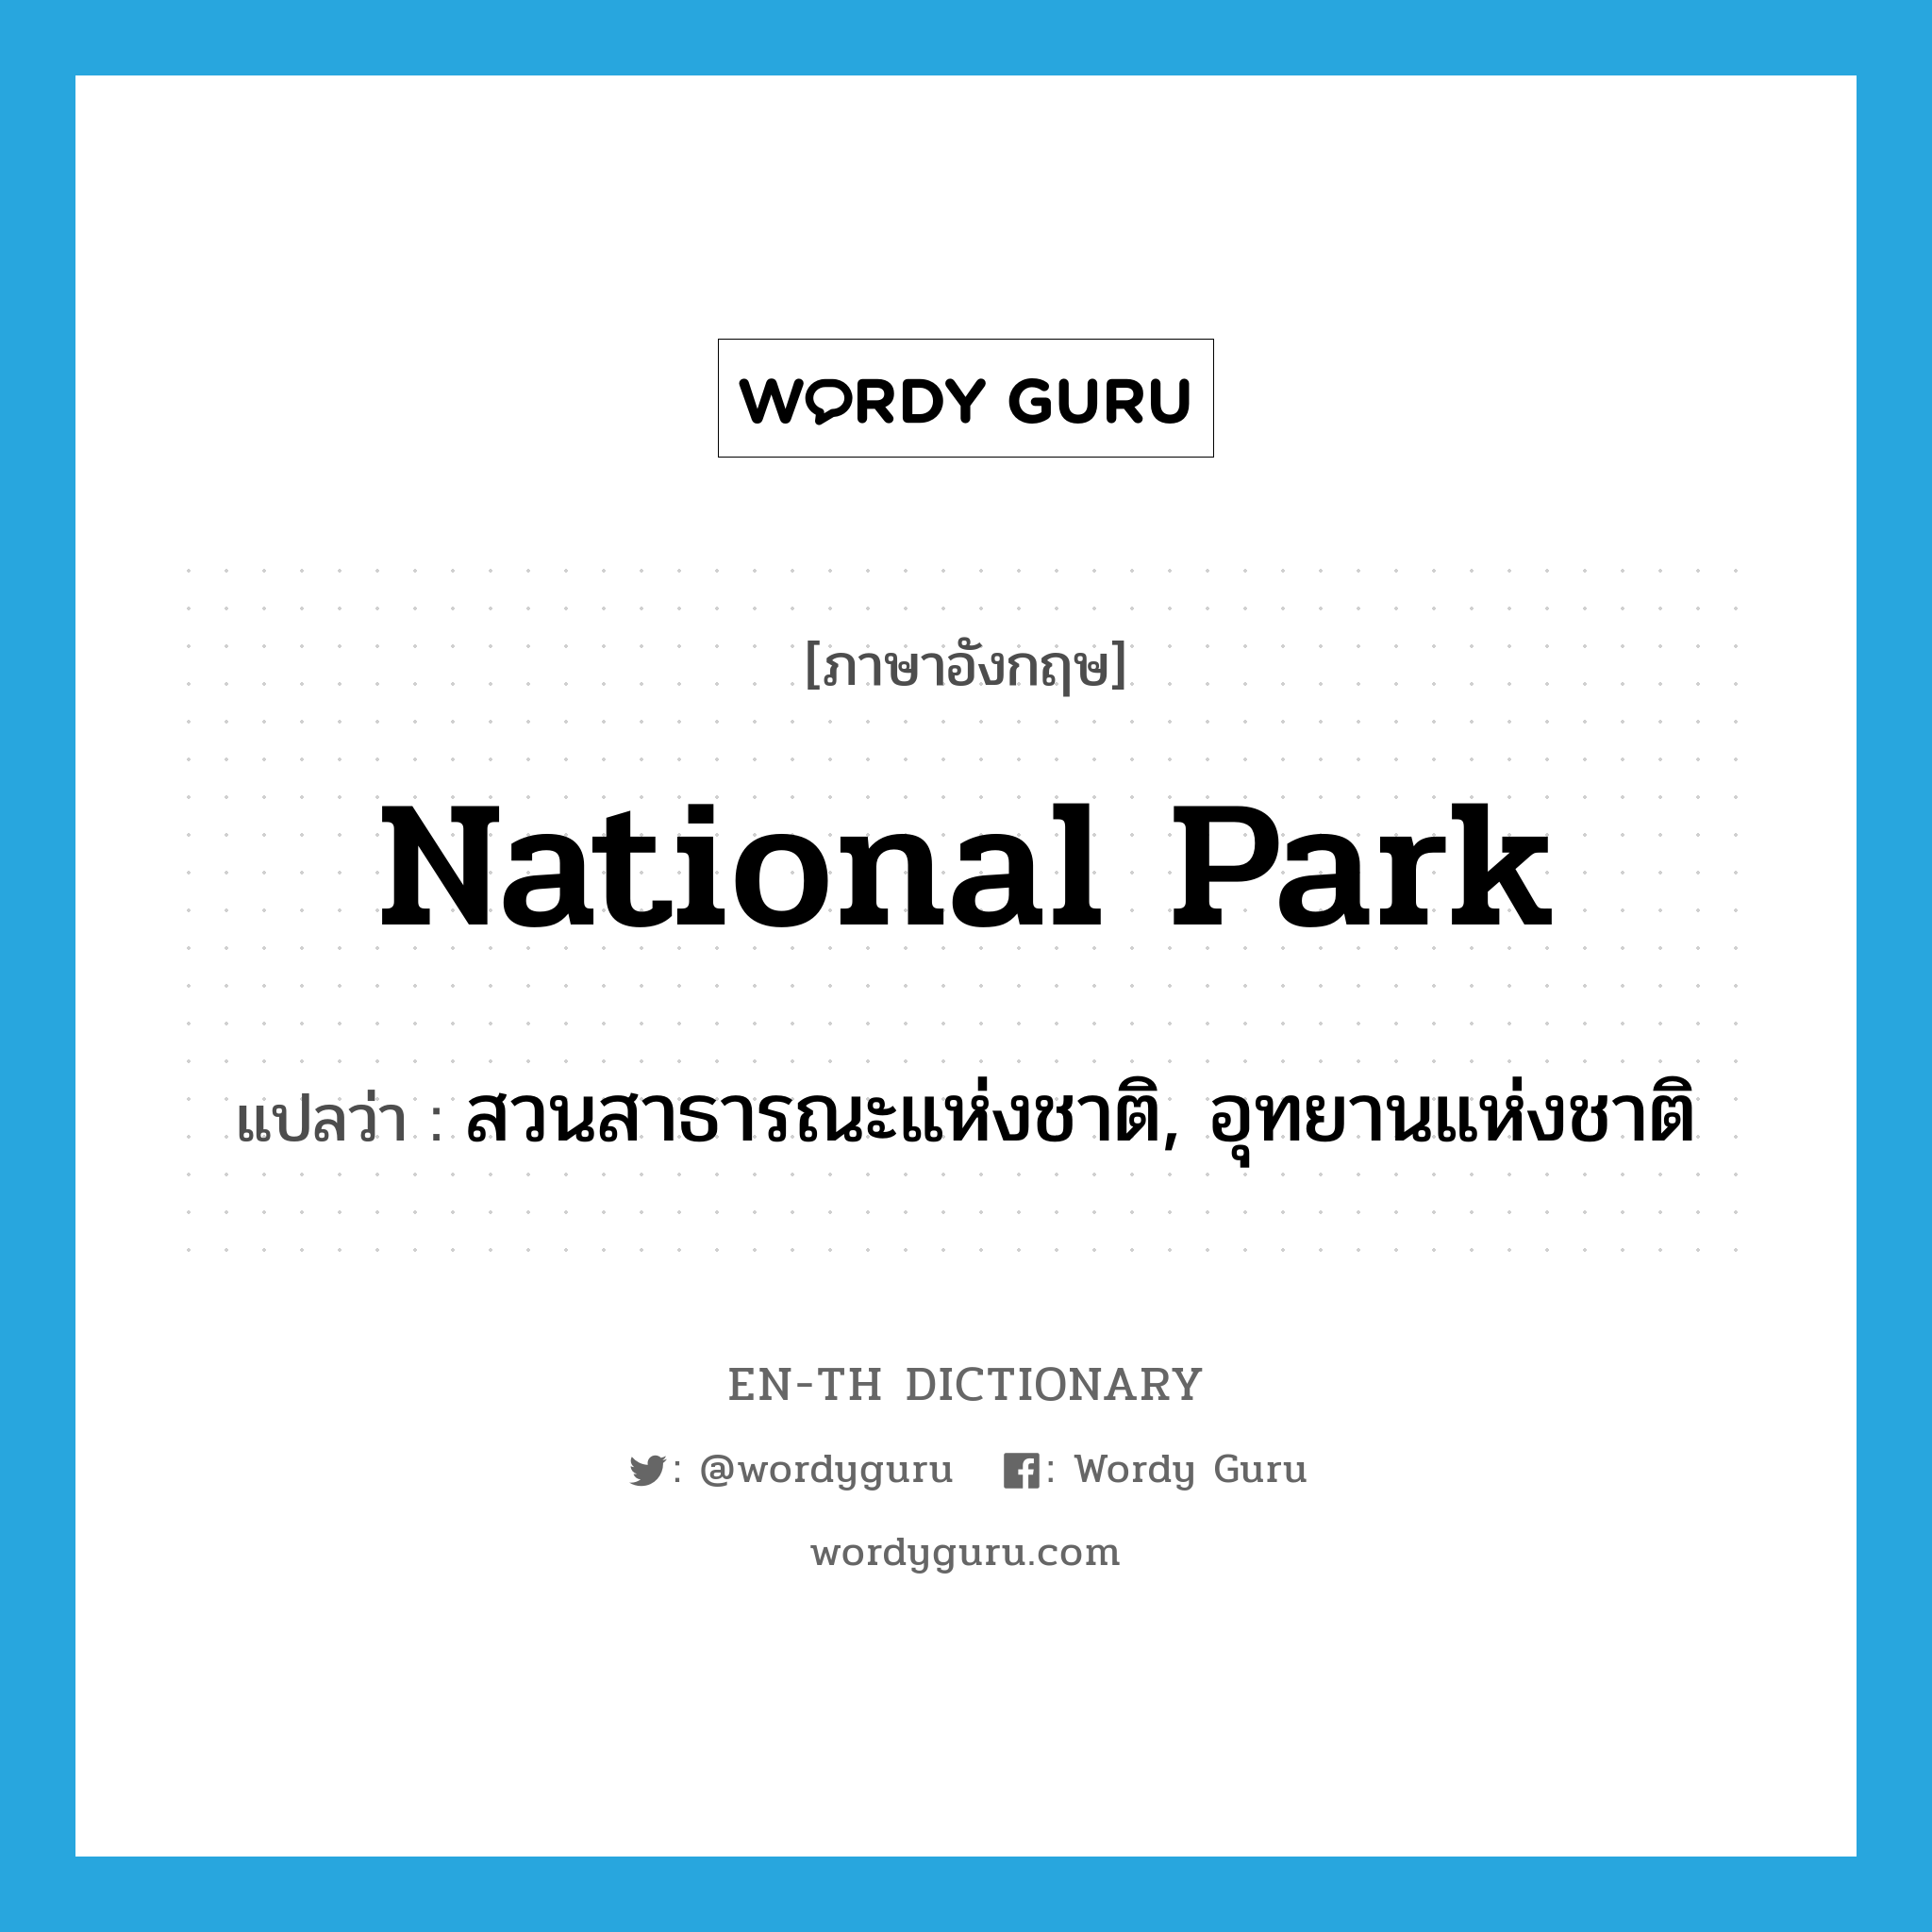 สวนสาธารณะแห่งชาติ, อุทยานแห่งชาติ ภาษาอังกฤษ?, คำศัพท์ภาษาอังกฤษ สวนสาธารณะแห่งชาติ, อุทยานแห่งชาติ แปลว่า national park ประเภท N หมวด N